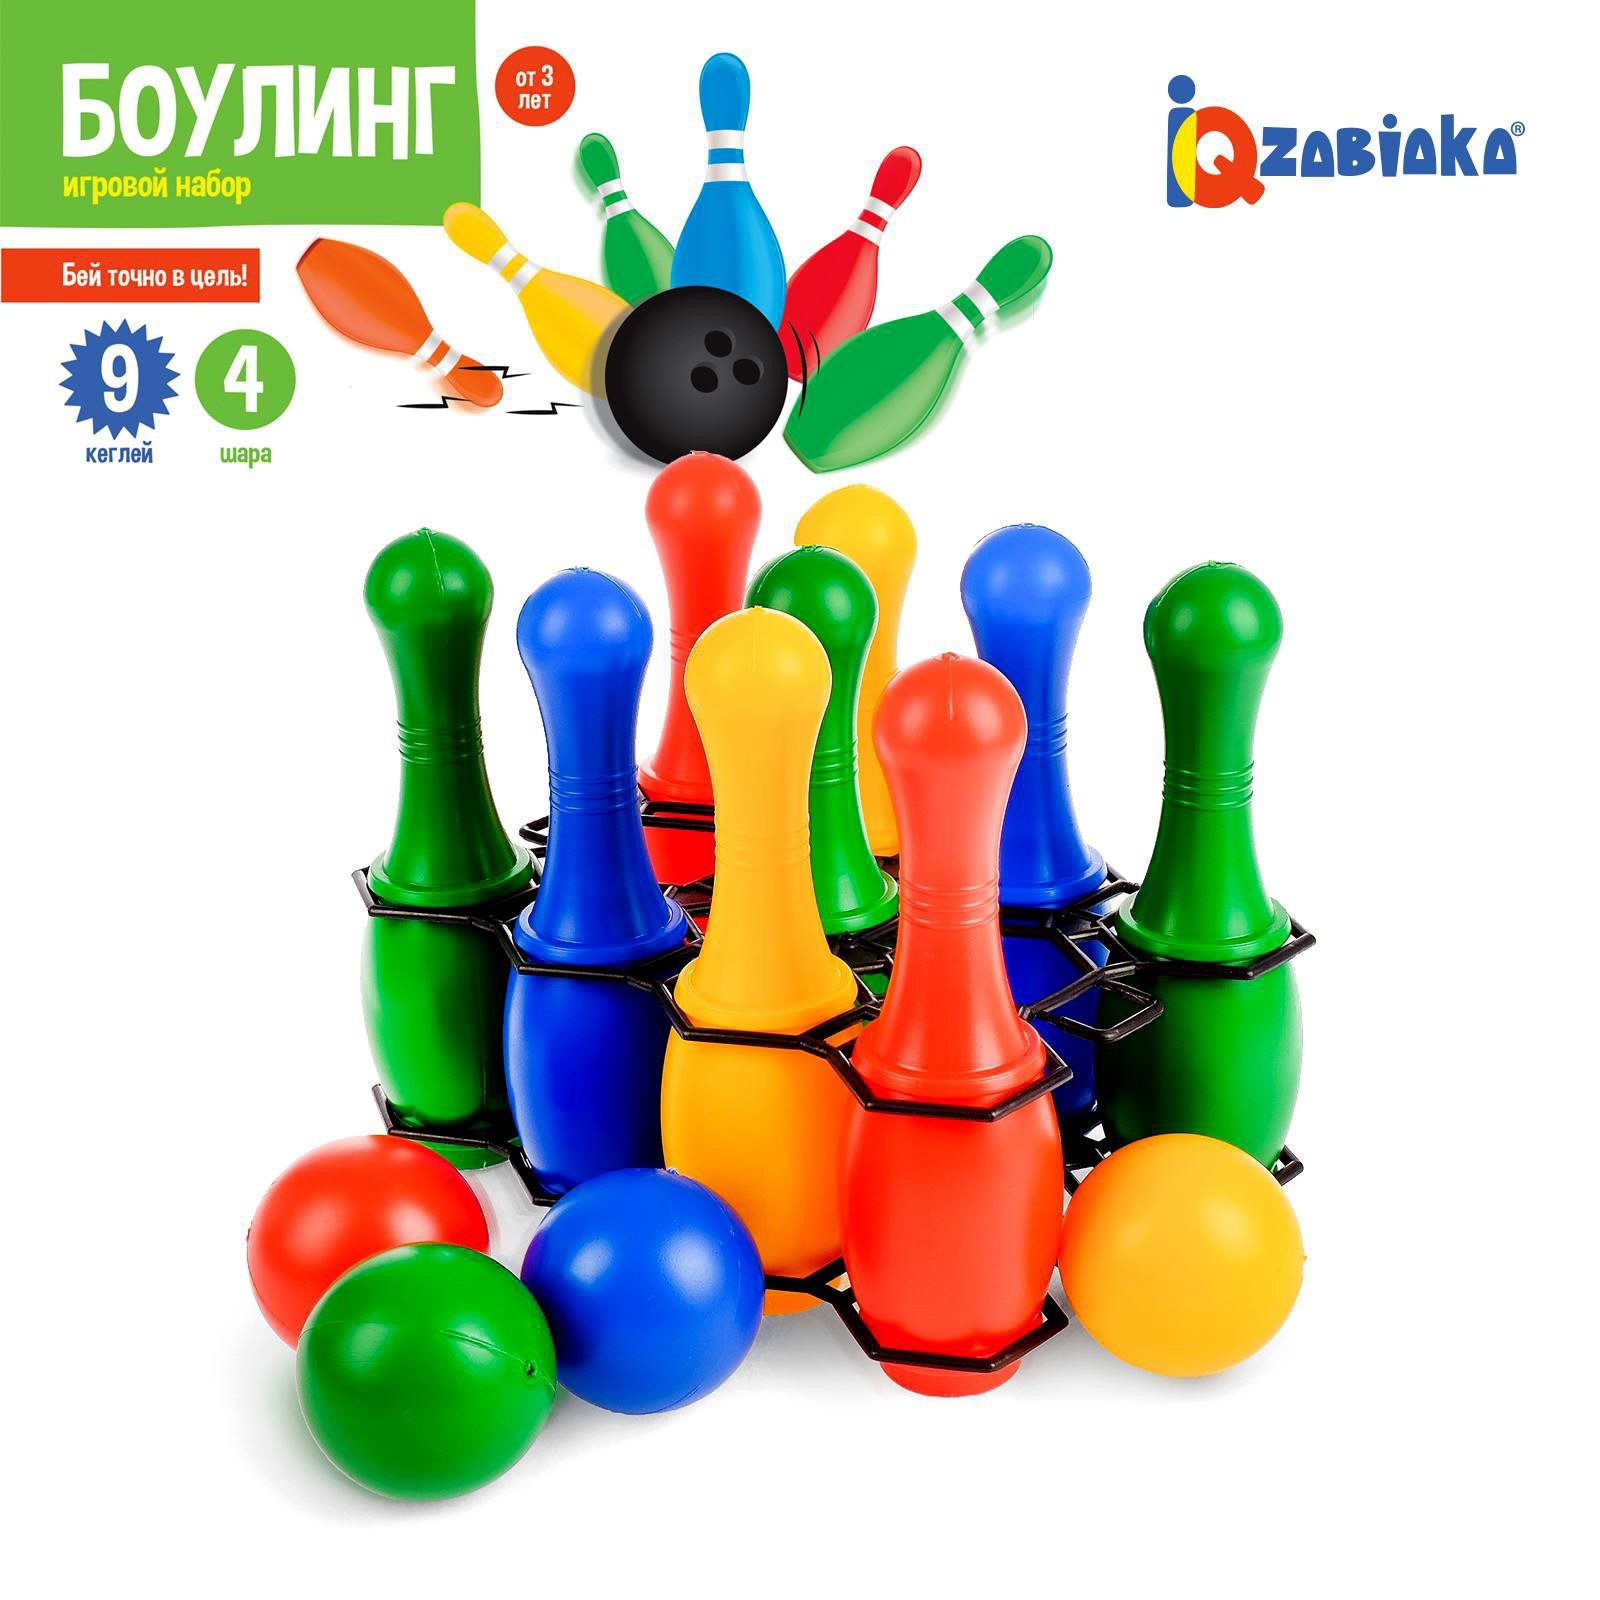 Боулинг IQ-ZABIAKA цветной: 9 кеглей 4 шара - фото 1